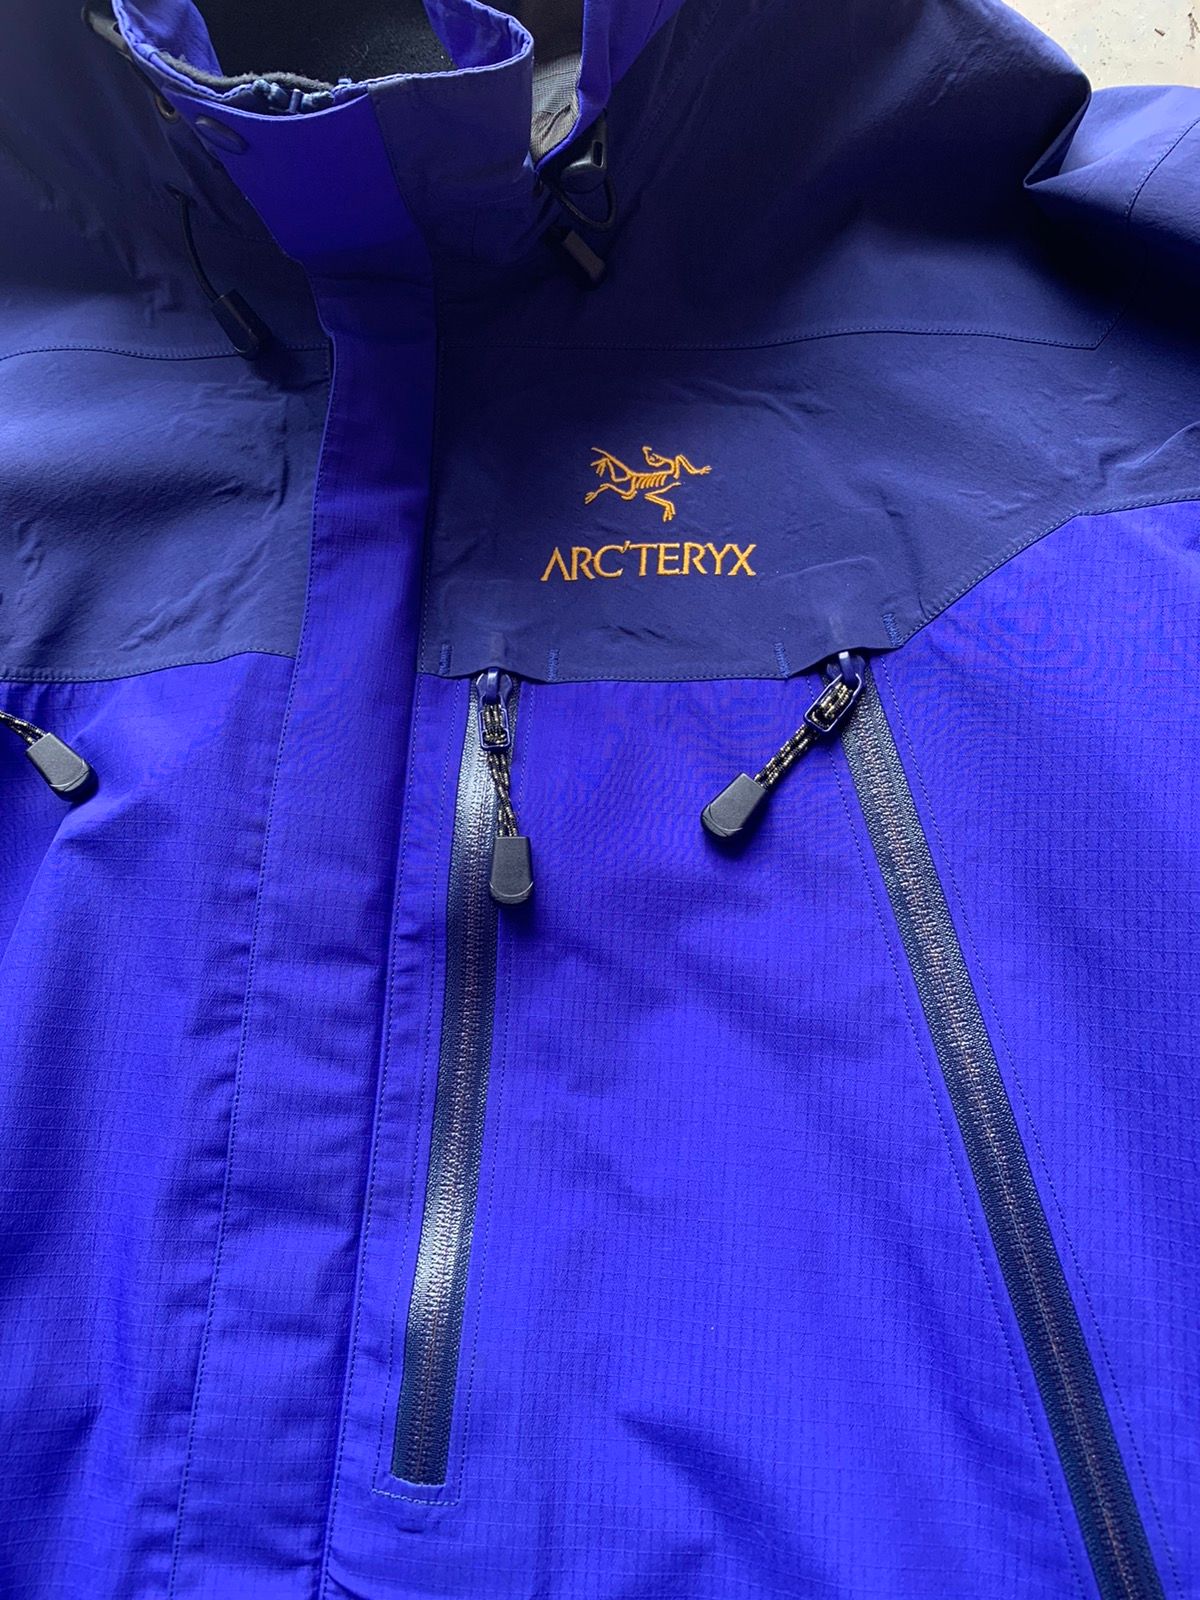 Arc'Teryx Vintage 1998 Arc’teryx Theta AR | Grailed